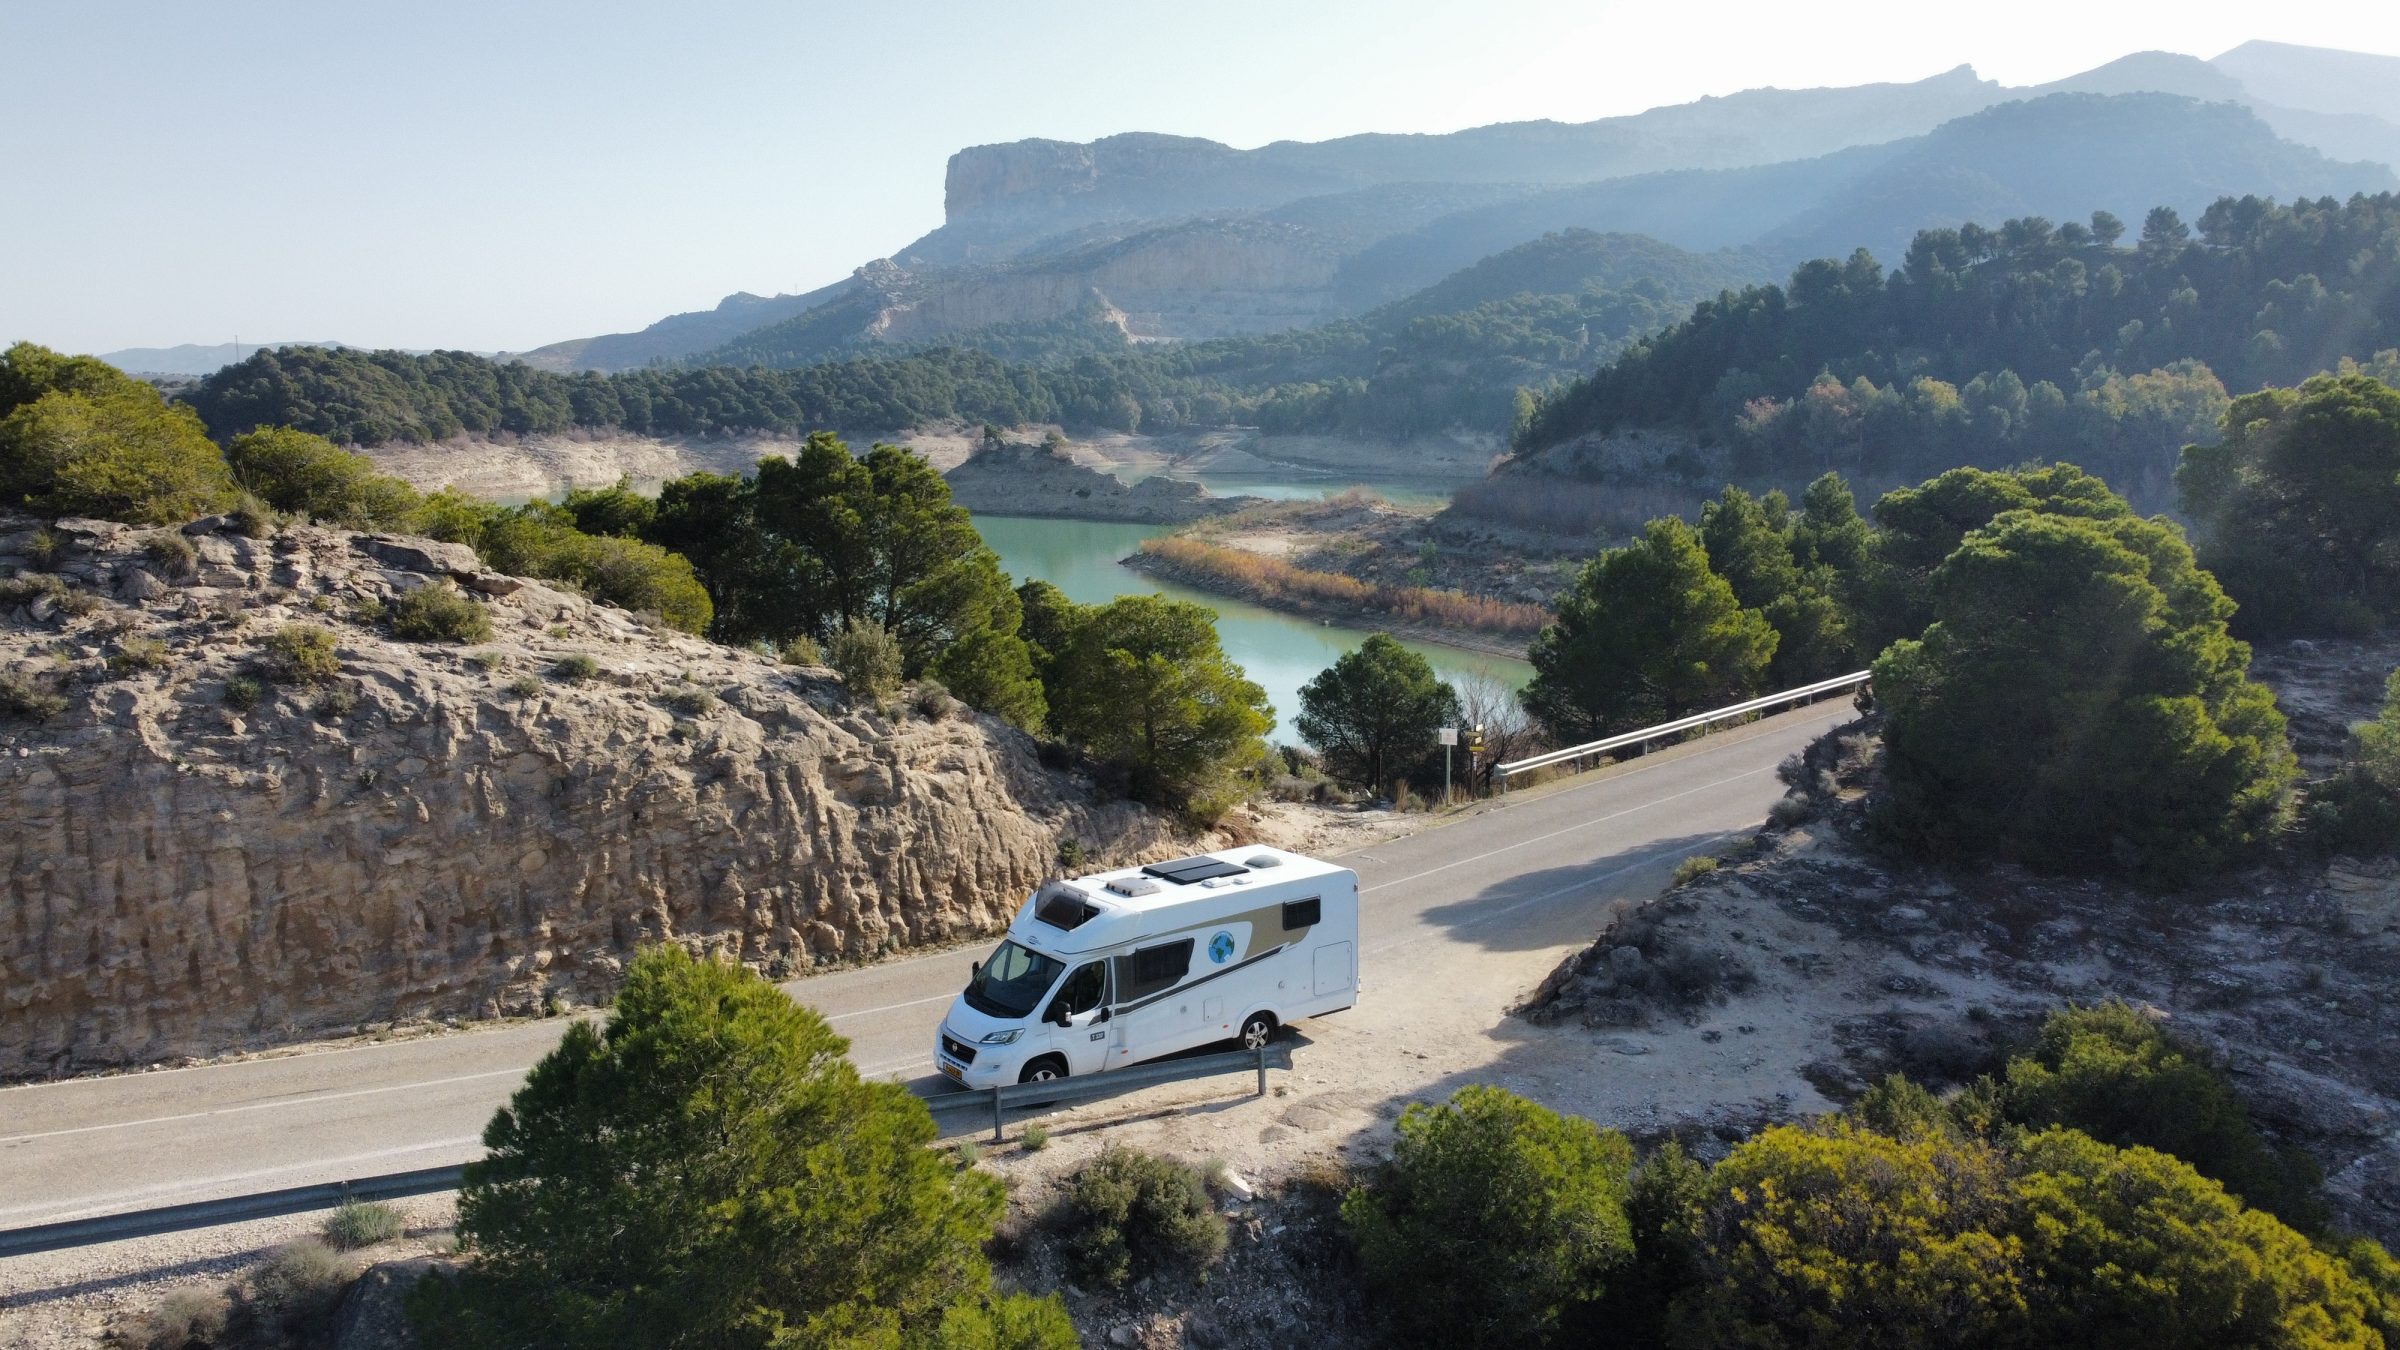 Autocamperen i smukt landskab | Autocamper tips og steder af interesse i det sydlige Spanien